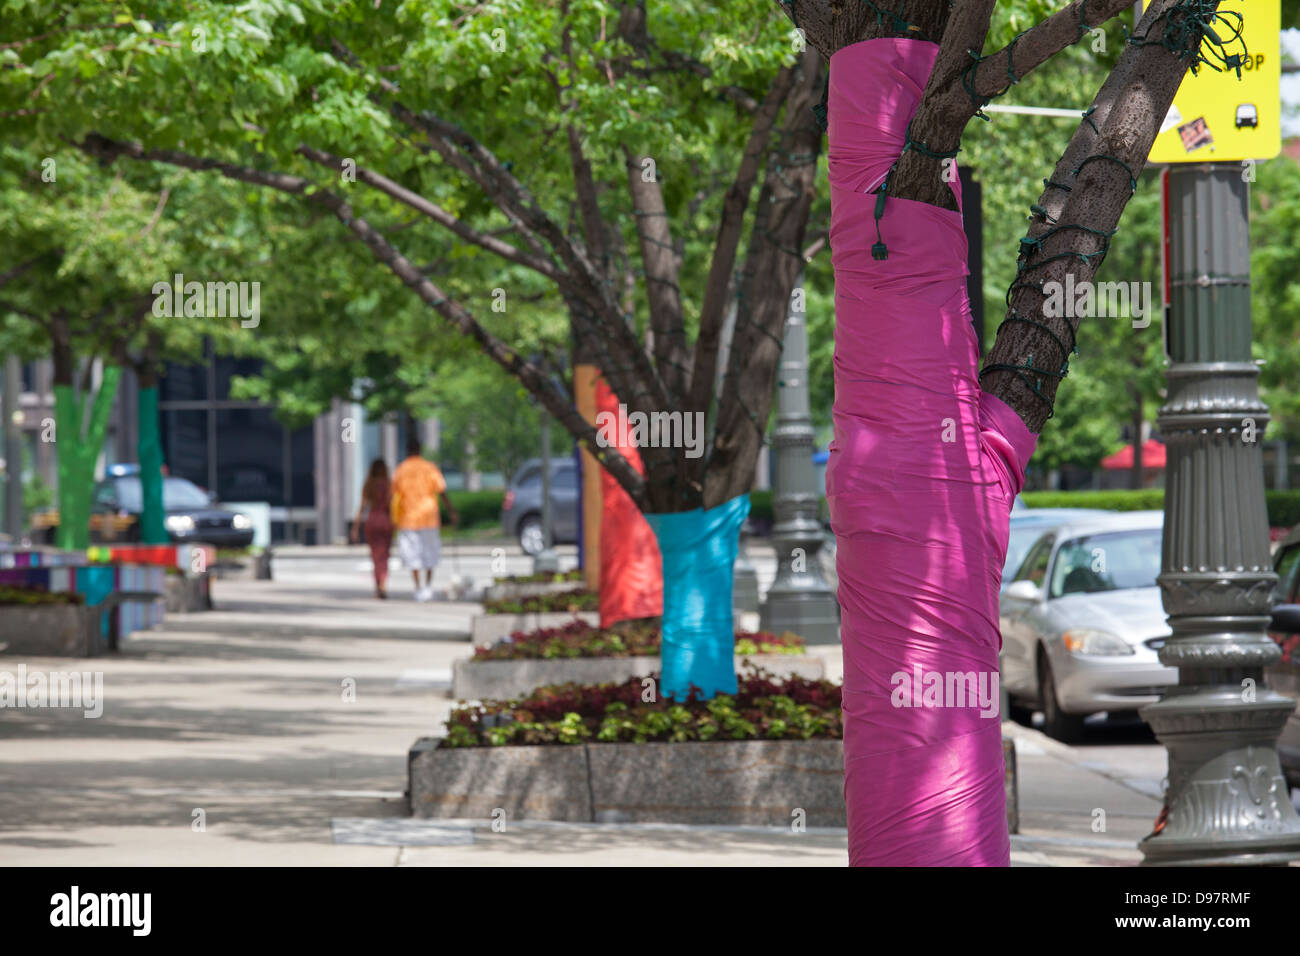 Detroit, Michigan - los árboles a lo largo de Woodward Avenue envuelto en un colorido material. Foto de stock